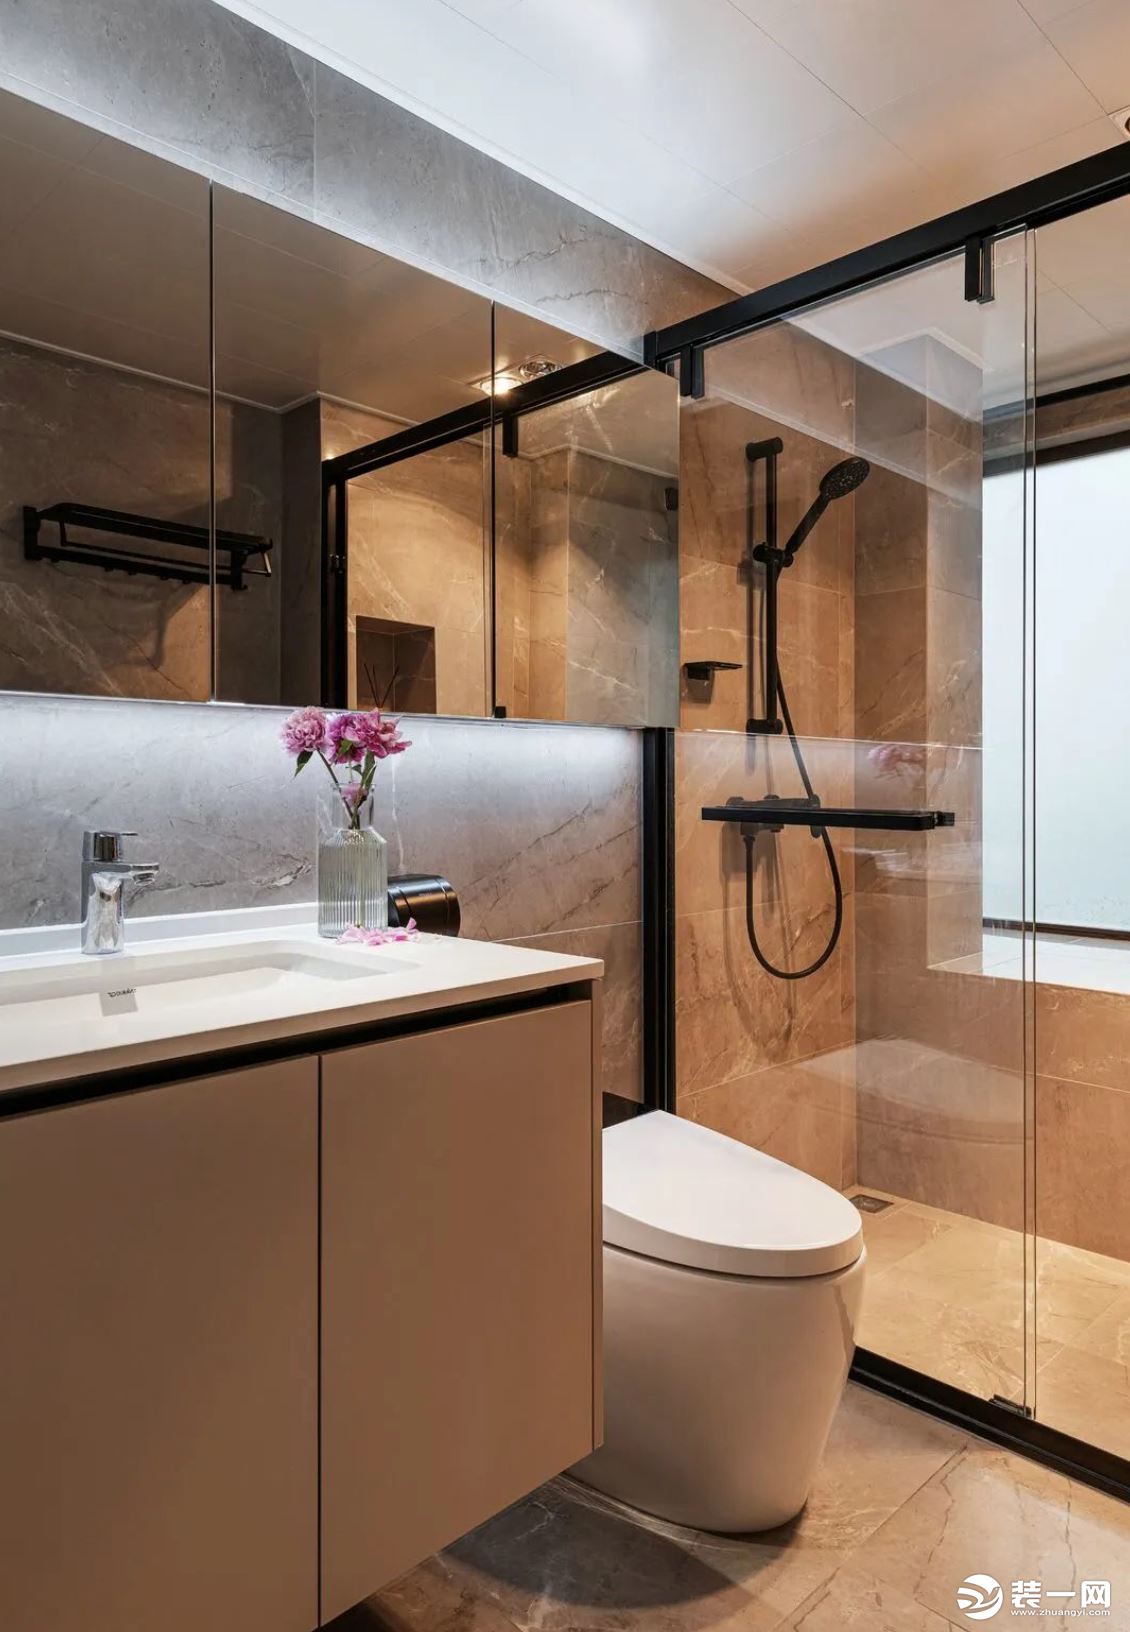 洗漱台 马桶 淋浴室置于同一空间，极好地将生活的便携与艺术融合